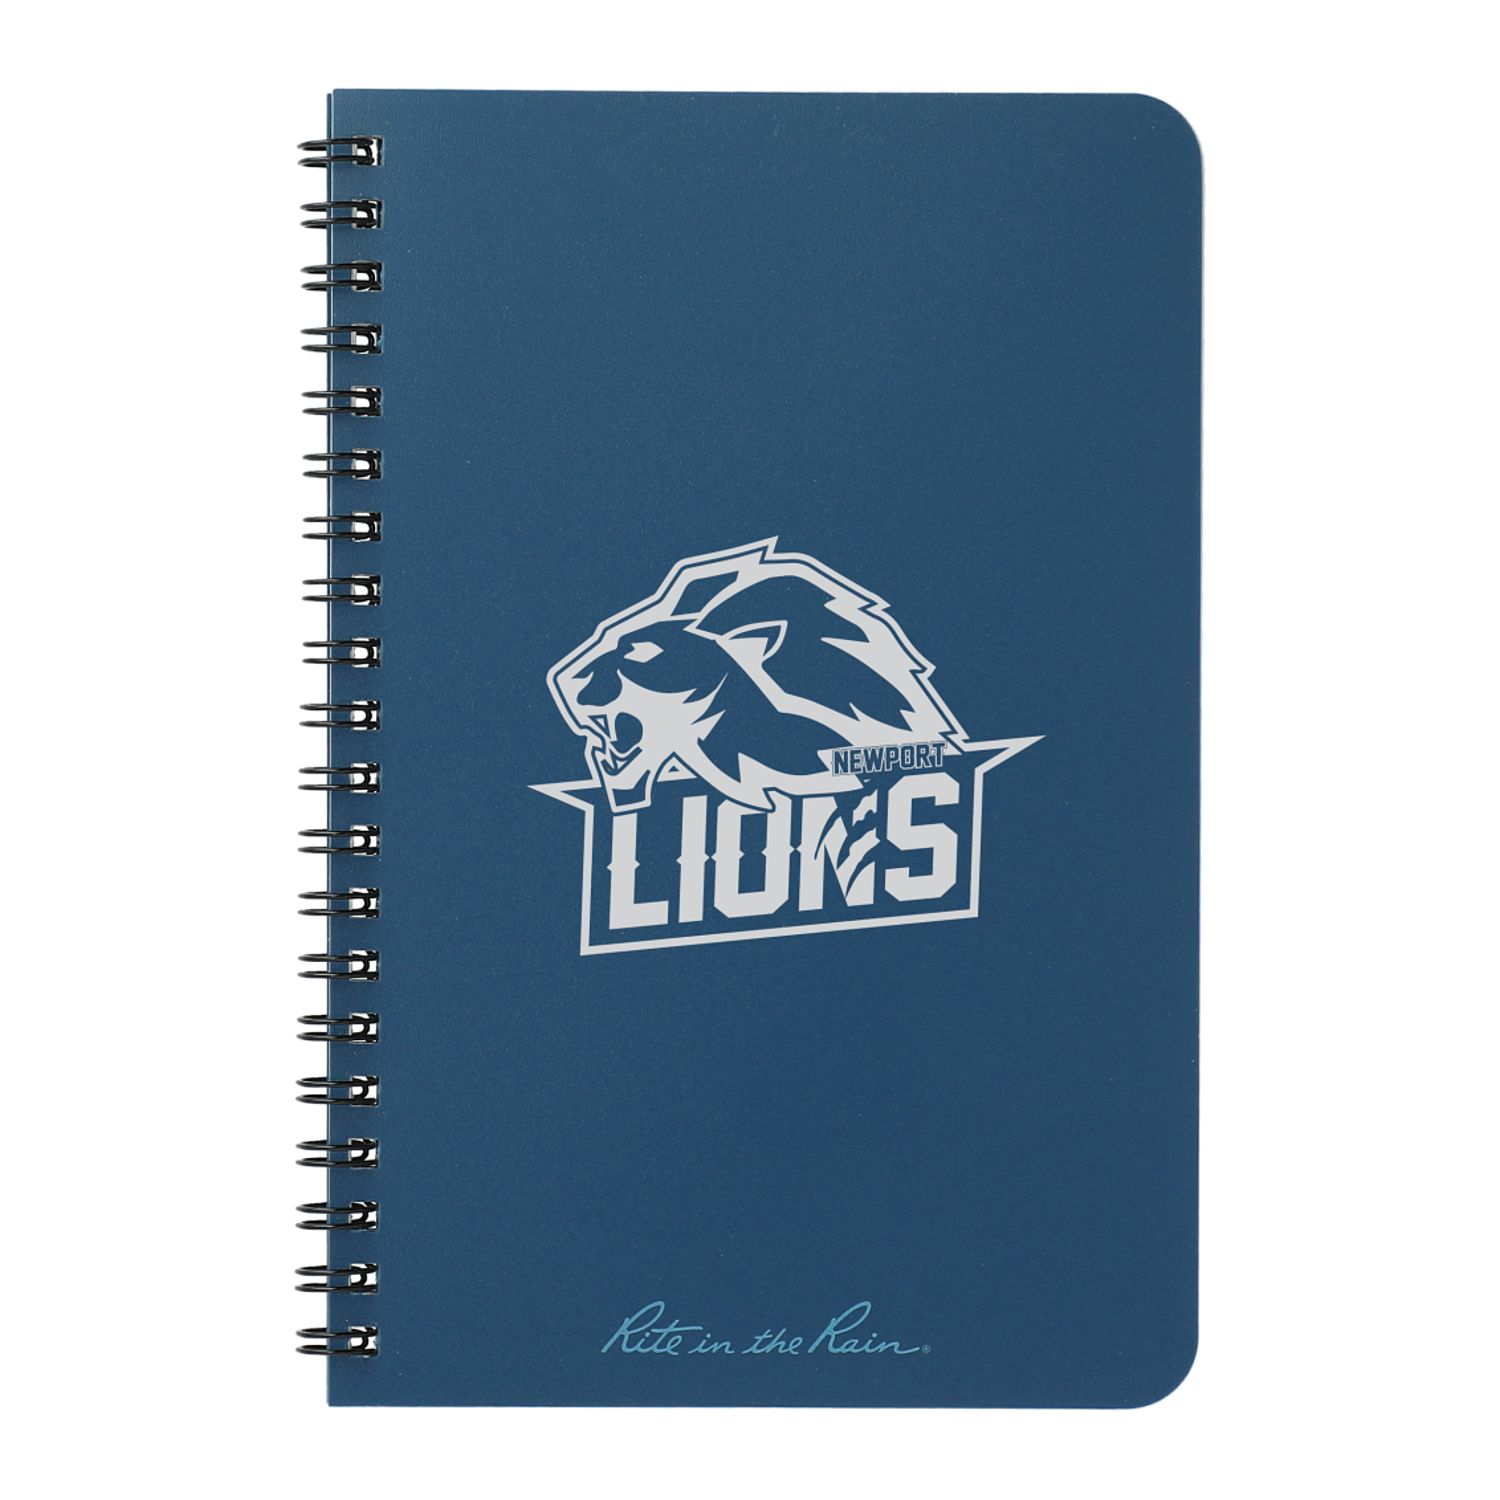 Custom Branded Rite in the Rain Notebooks - Blue